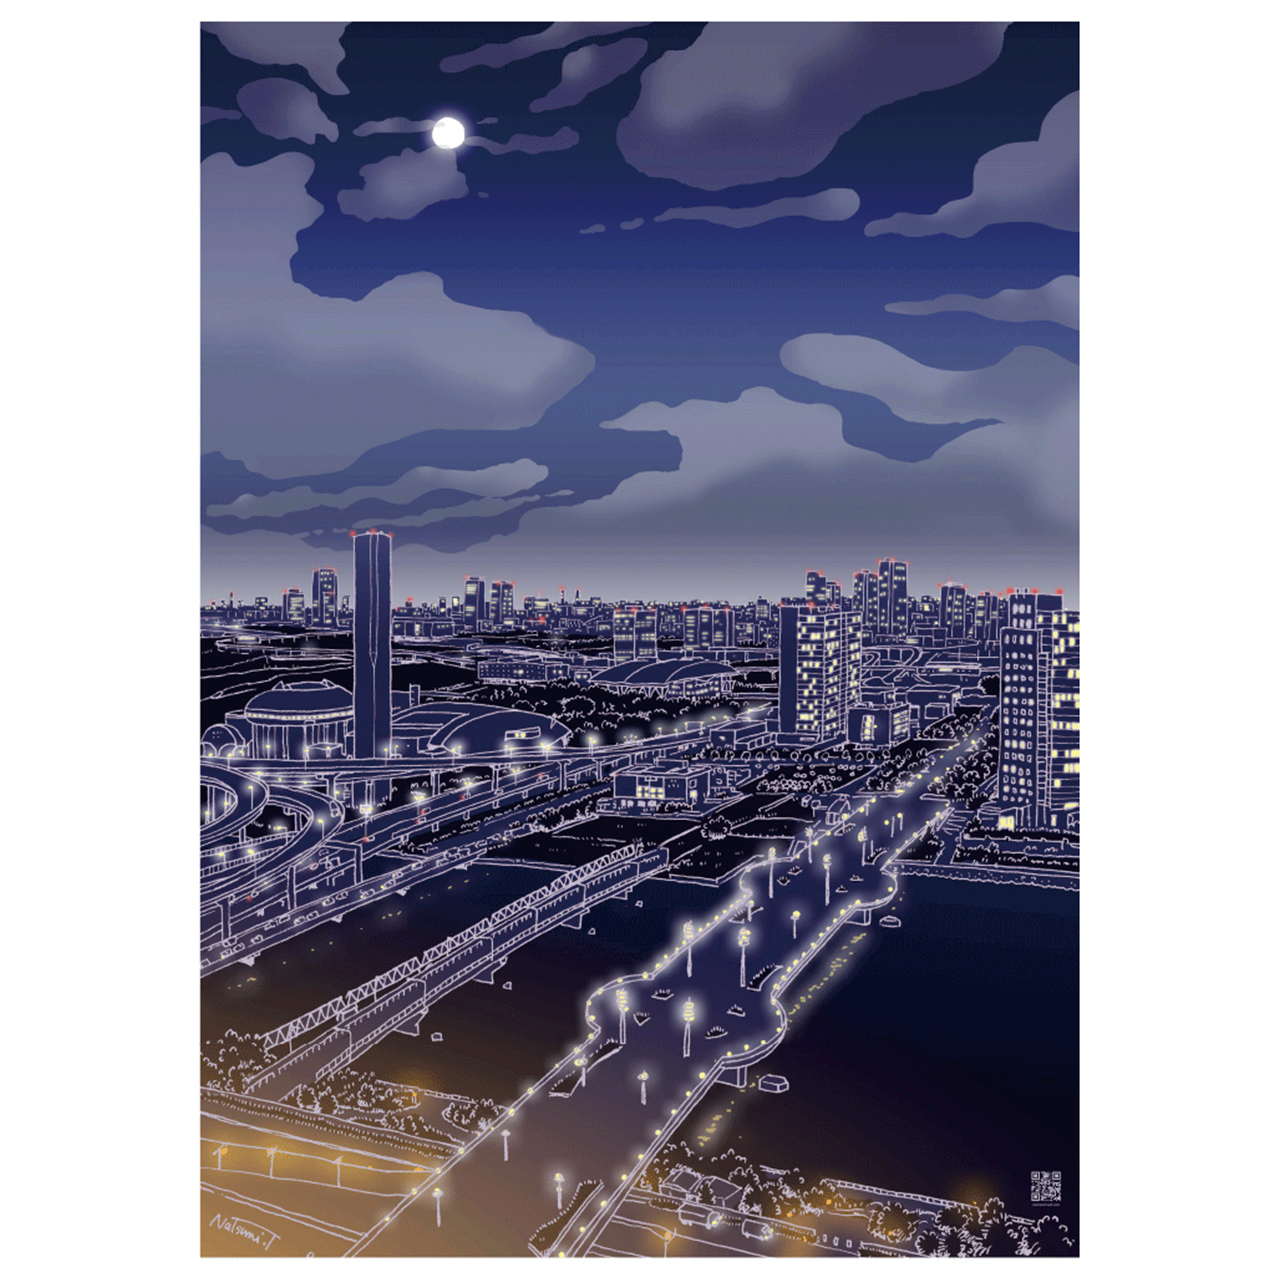 都心の夜景と月明かりを贈る 月夜の袋 Ft イラストレーター 土田 菜摘さん 紙単衣 Kamihitoe 水引アクセサリーと雑貨のお店